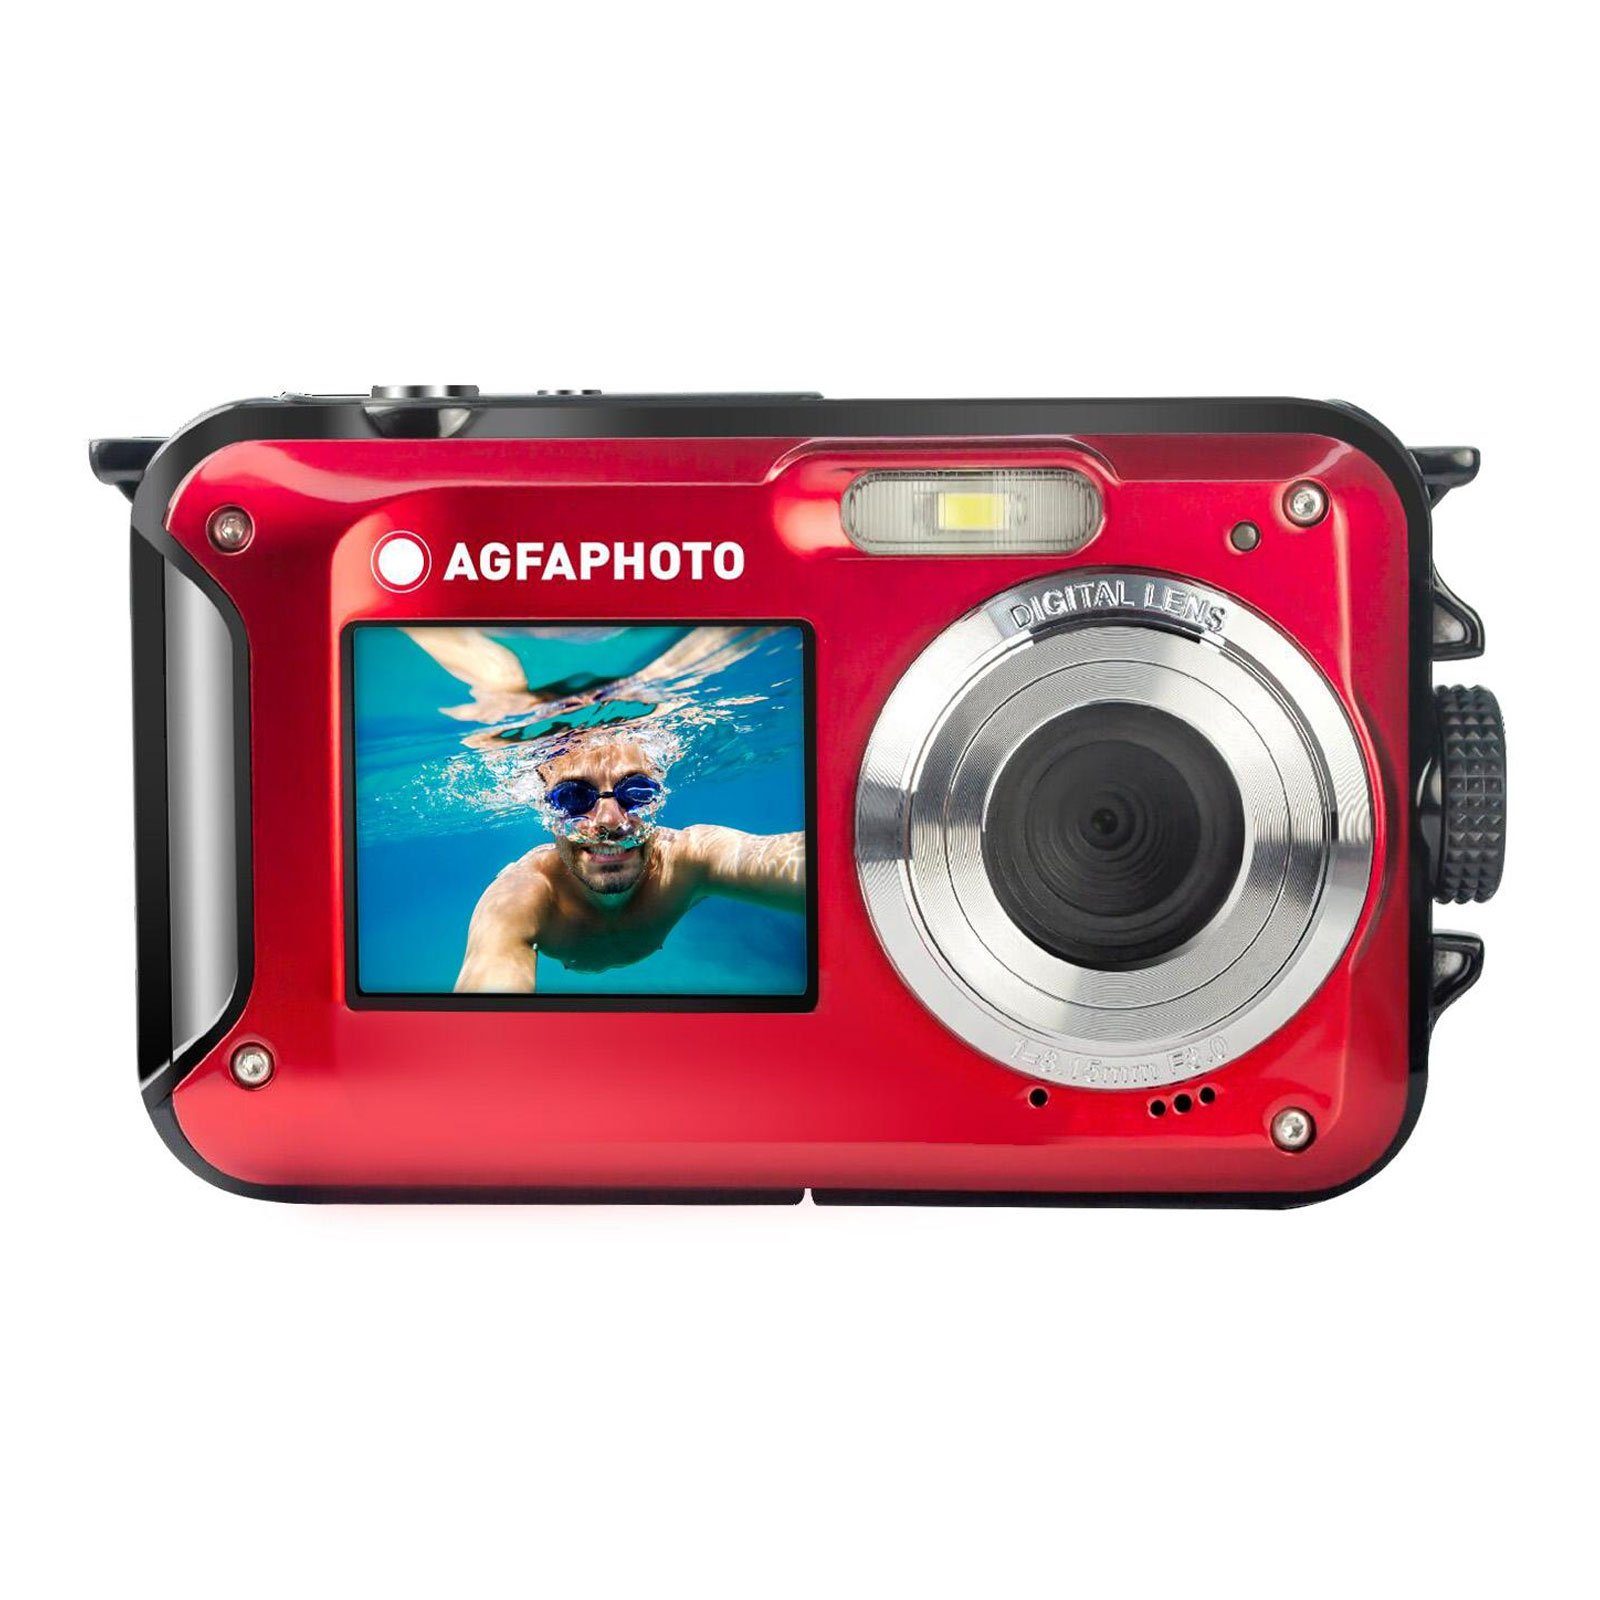 AGFA Kompaktkamera WP8000 digital 16X (Gesichtserkennung, Bildstabilisierung) zoom,